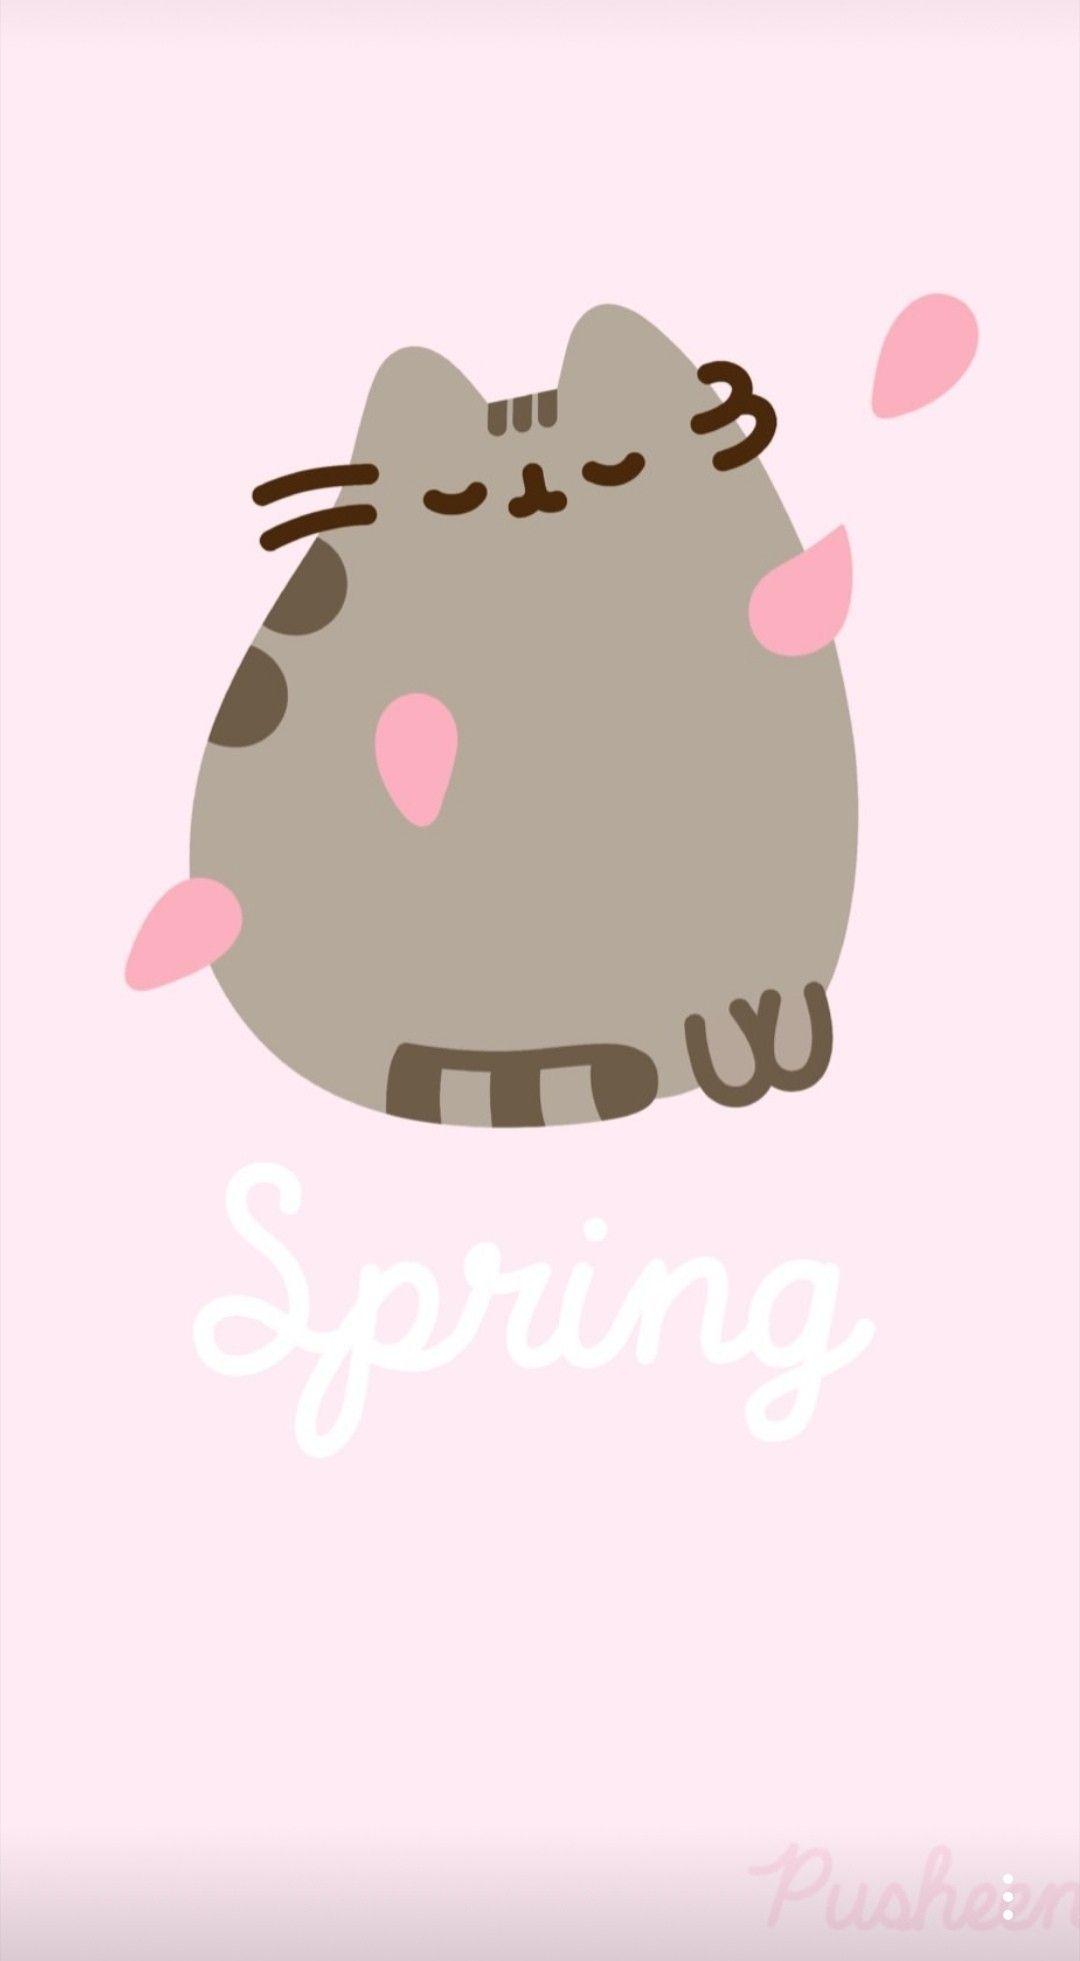 pusheen #spring #flower #cat #pusheenthecat. Pusheen cute